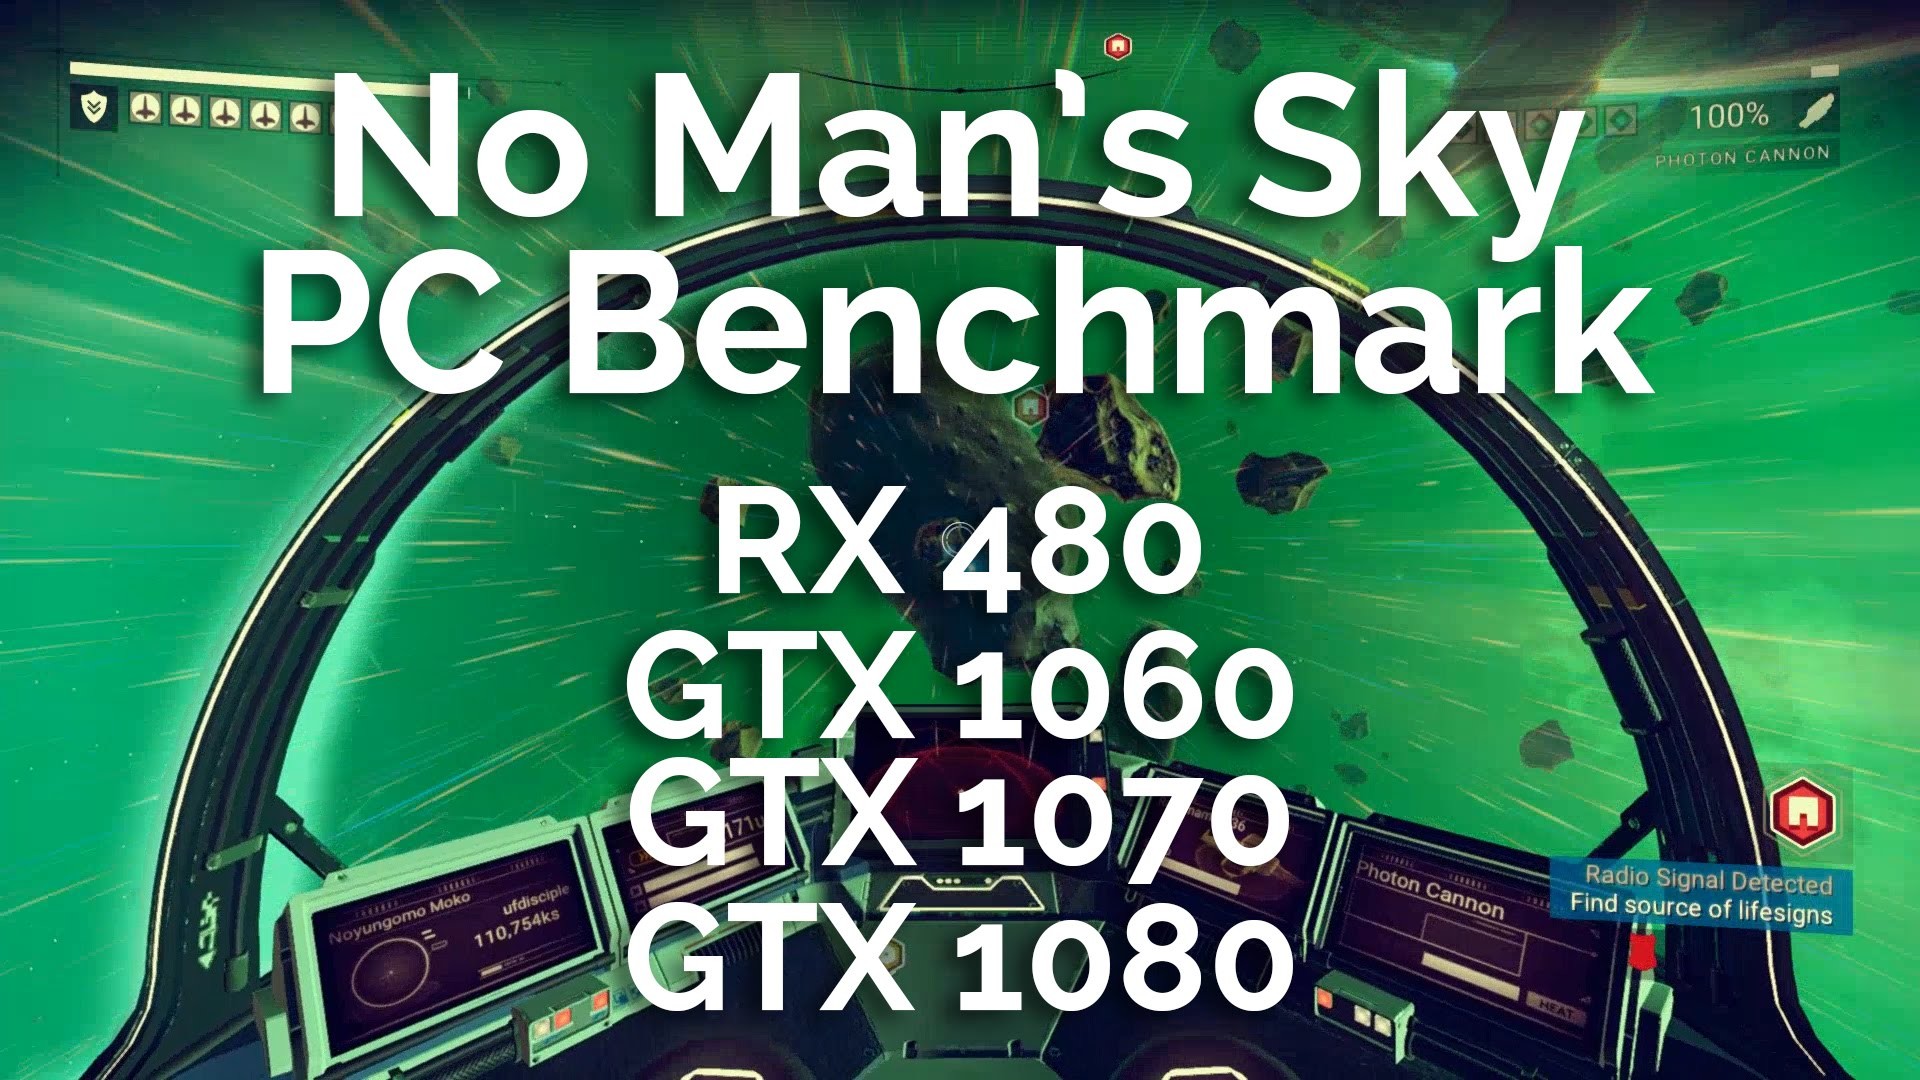 1920x1080 No Man's Sky PC Benchmarks - RX 480 + GTX 1060, 1070, & 1080